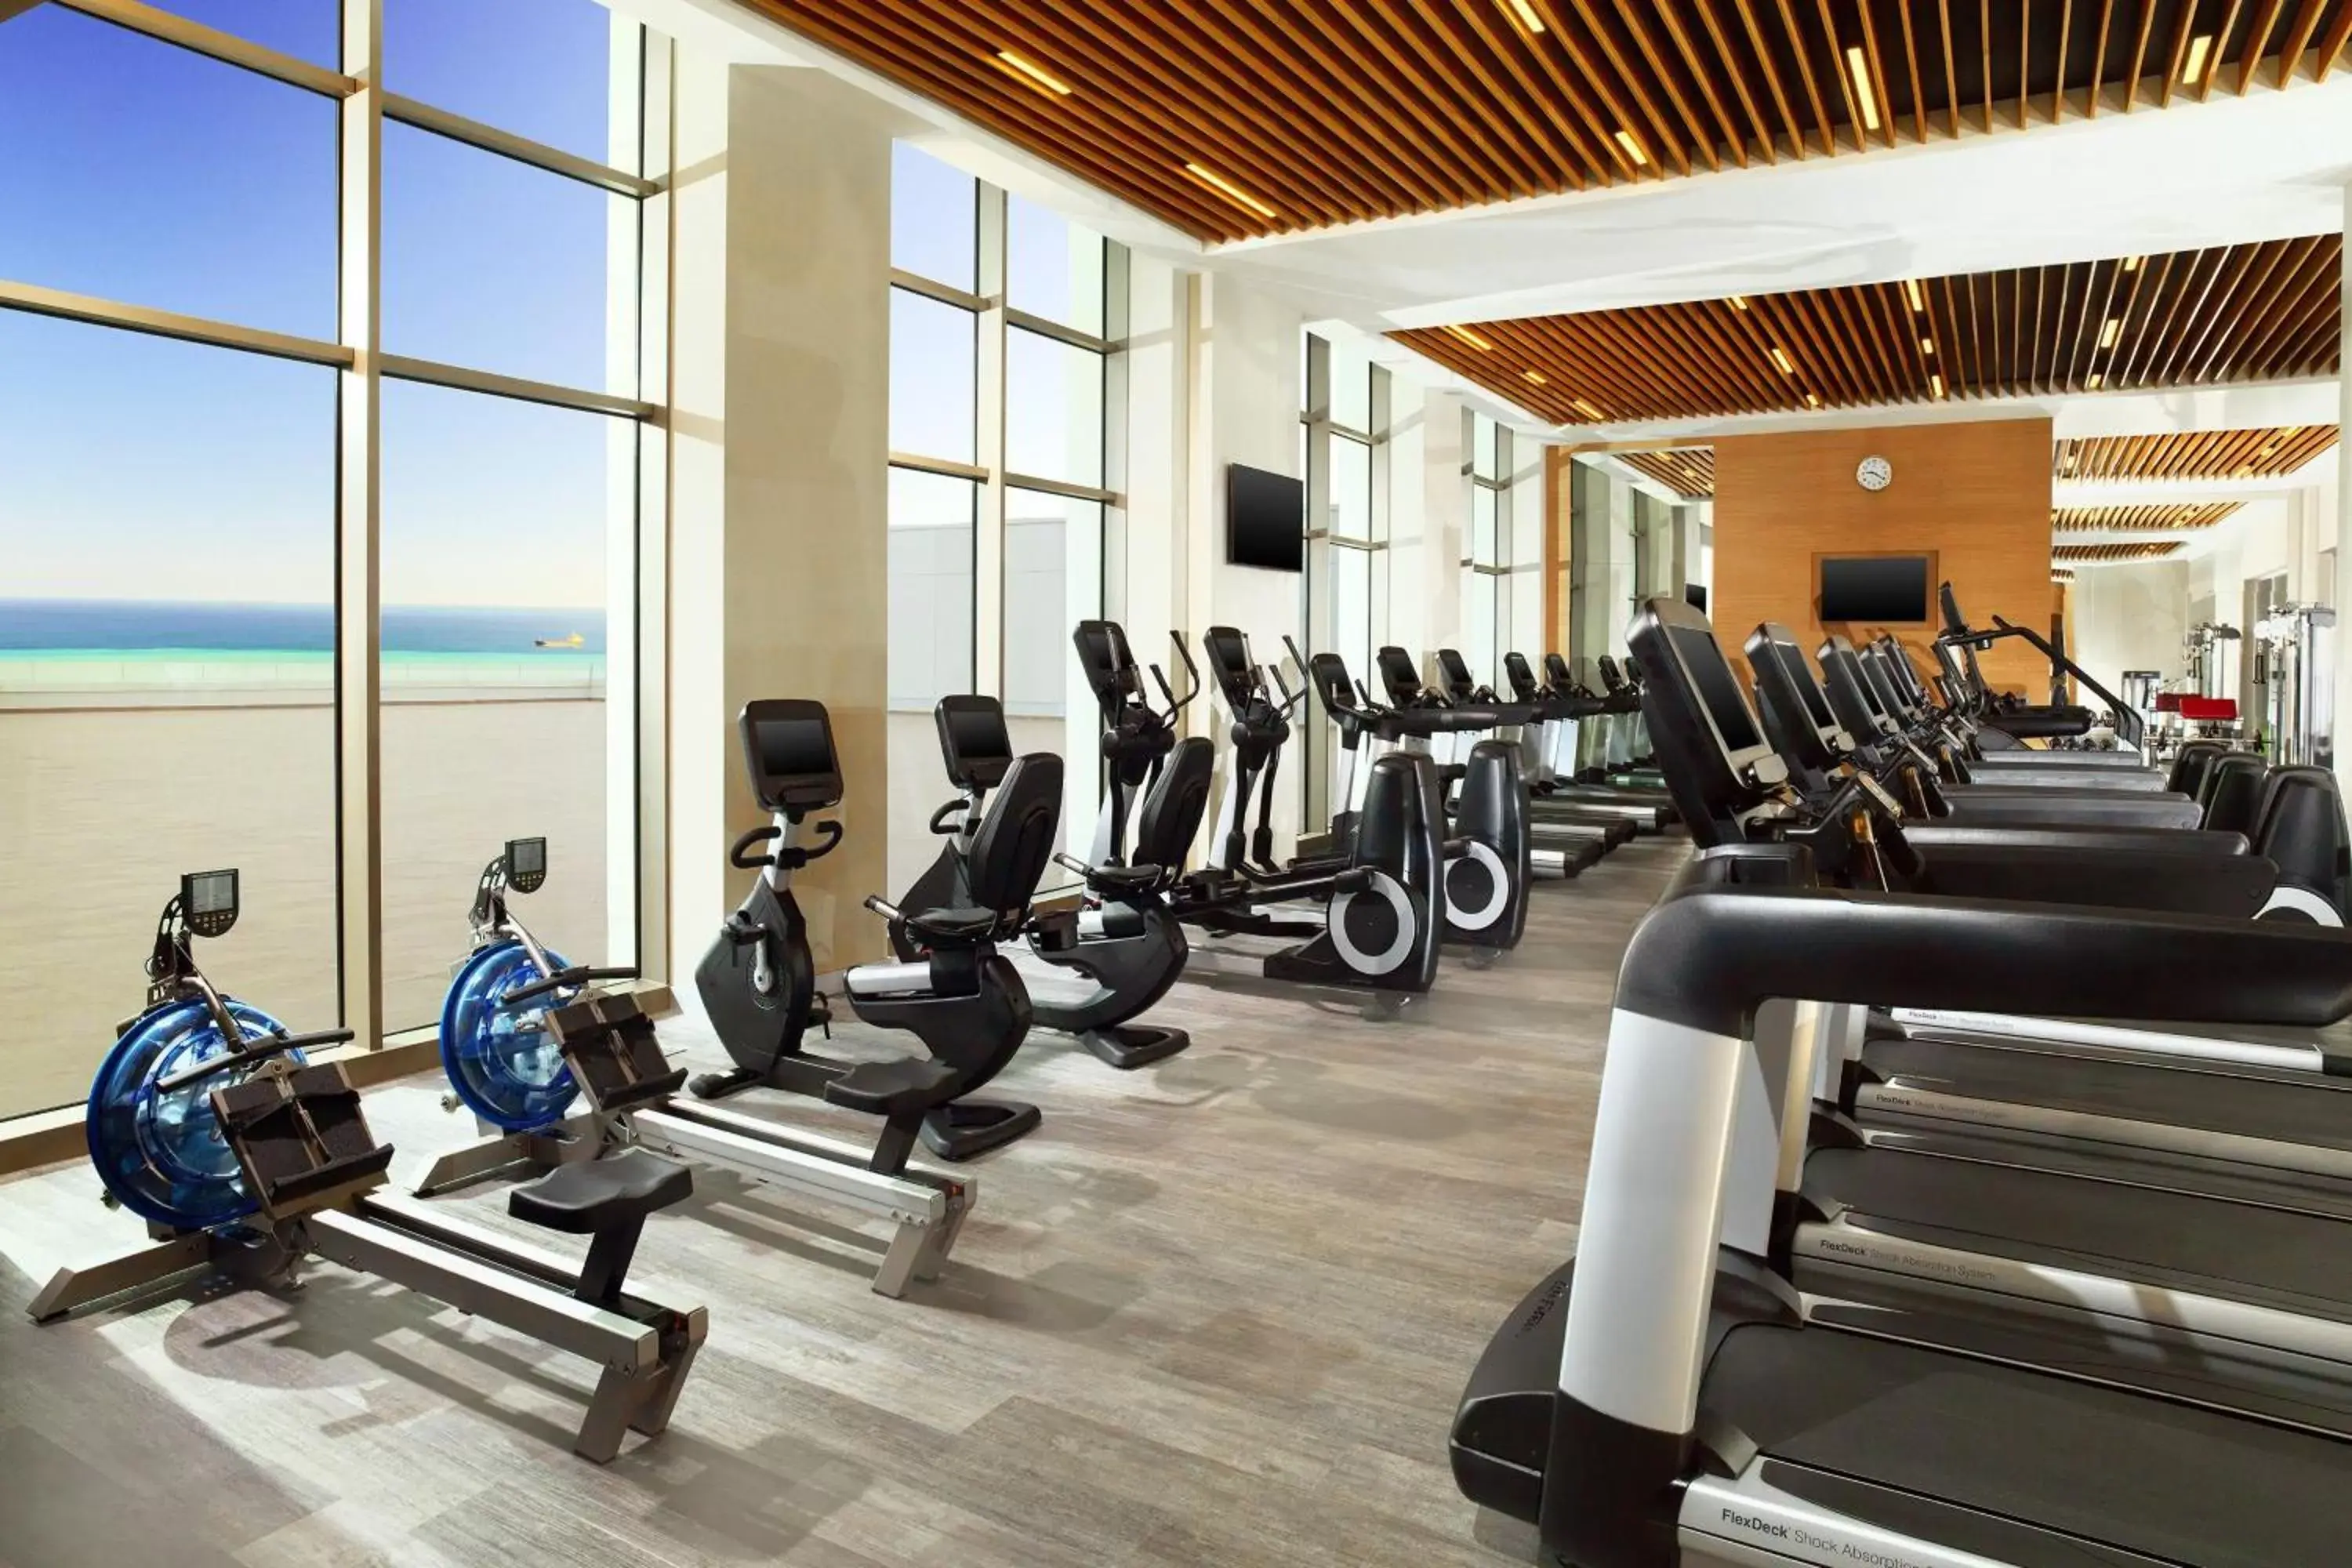 Fitness centre/facilities, Fitness Center/Facilities in Sheraton Grand Samsun Hotel